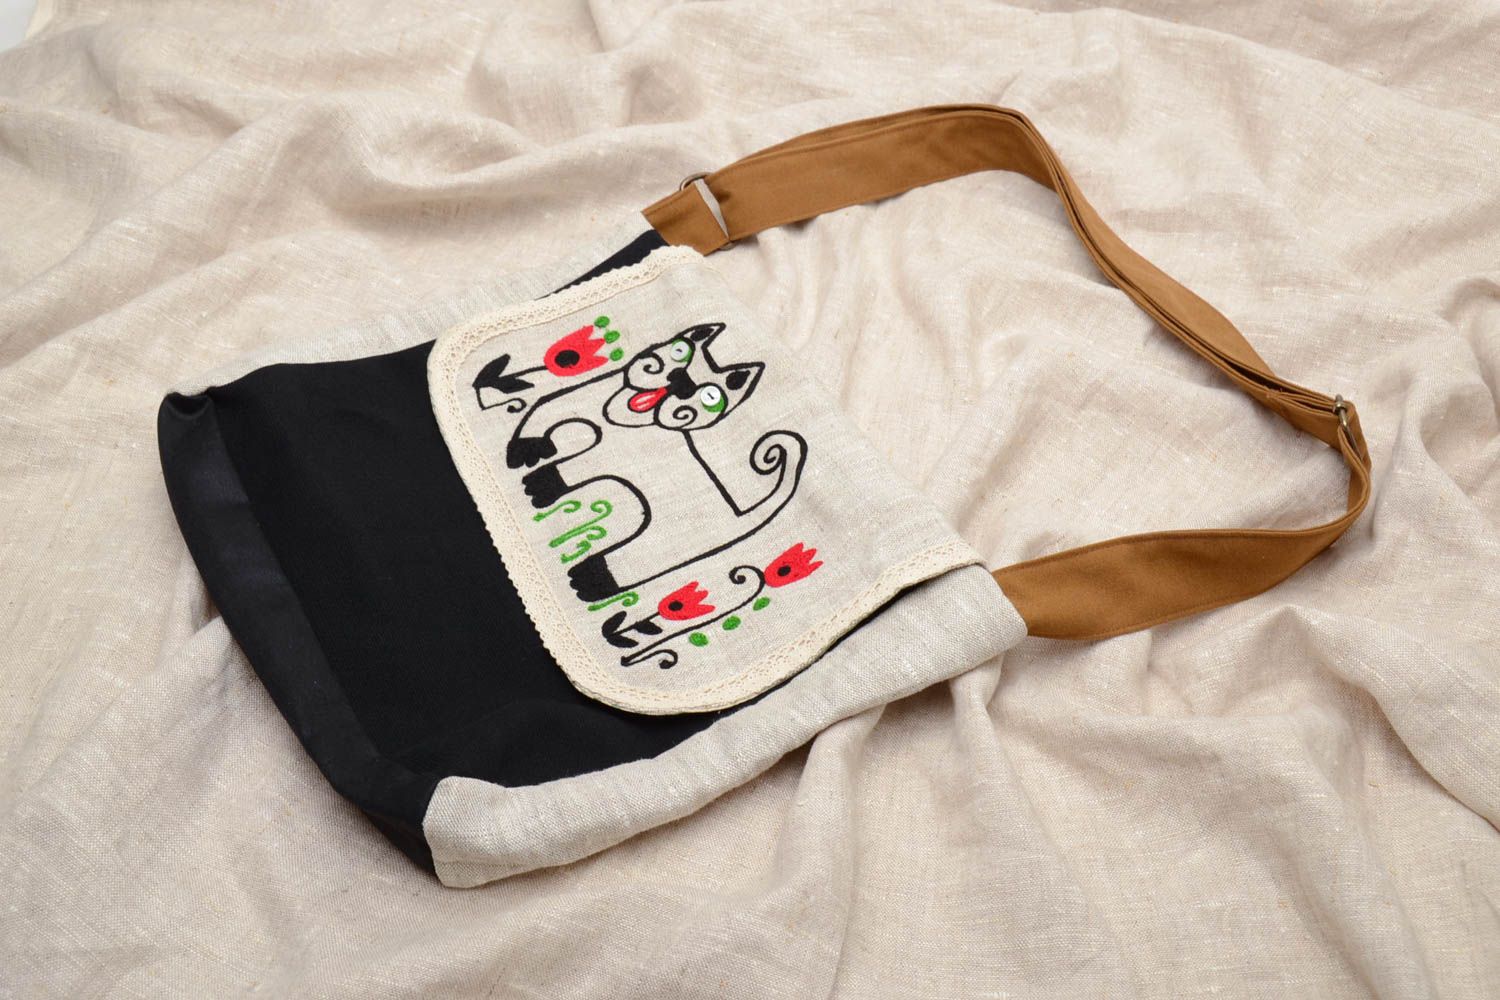 Textil Tasche mit Katzeprint foto 1